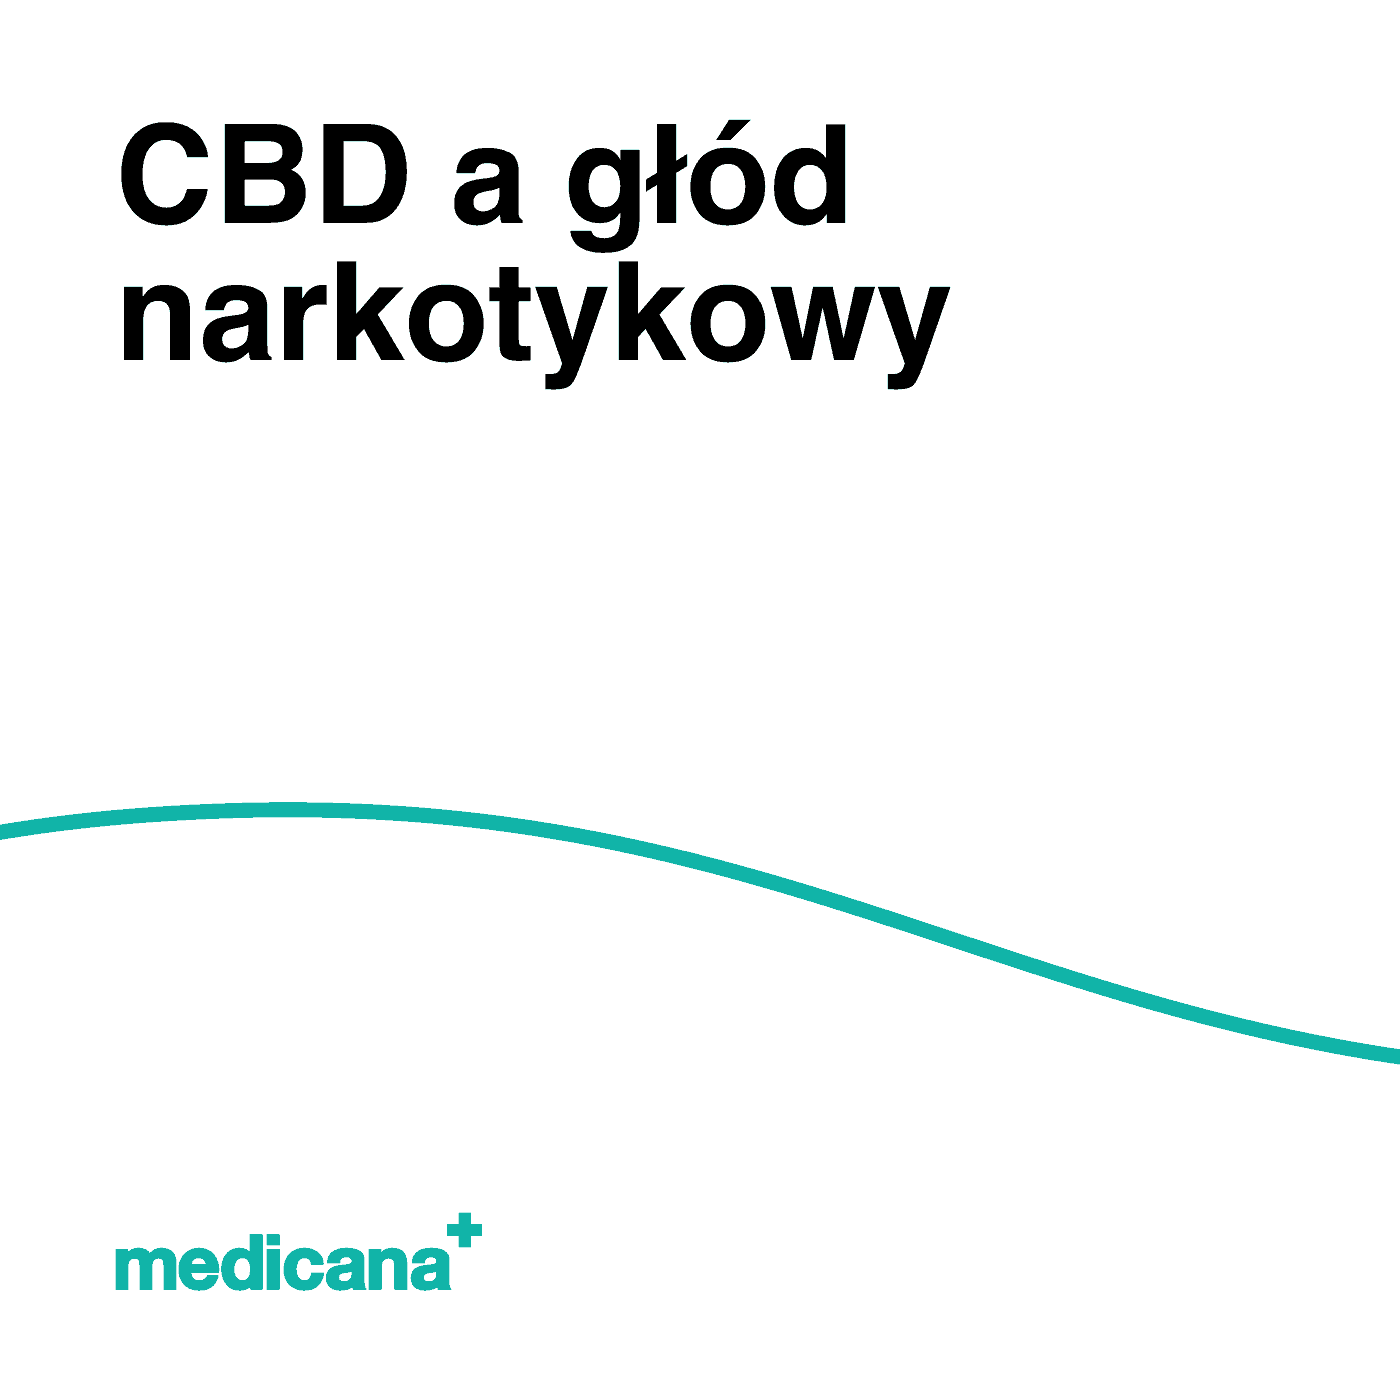 Grafika, białe tło z zieloną linią, czarnym napisem CBD a głód narkotykowy i logo Medicana Centrum Terapii Medyczna Marihuana w lewym dolnym rogu.